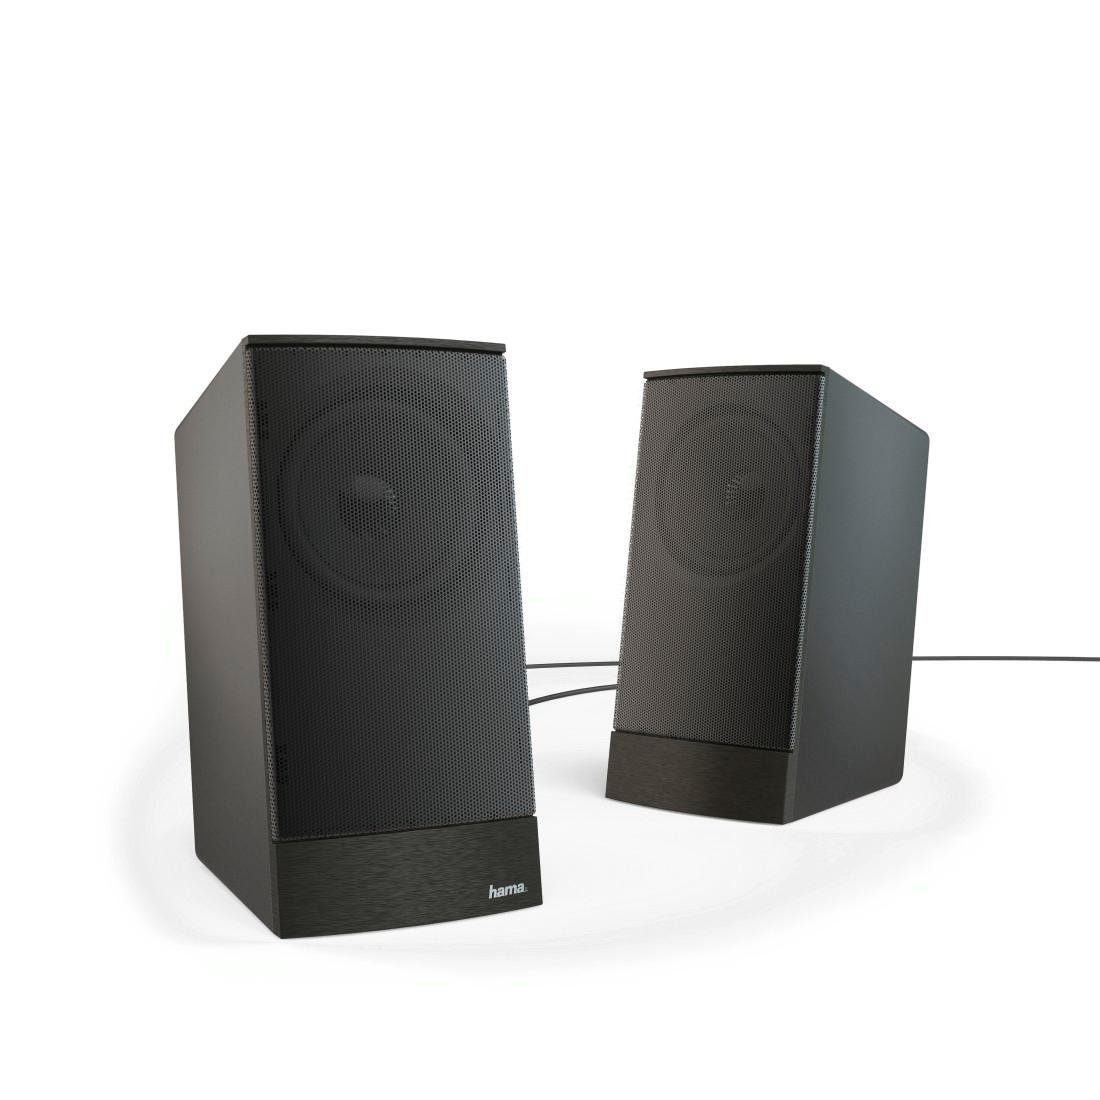 Hama 2.0 Lautsprecher Boxen Set für PC/Laptop, 8W/AUX/Stereo Sonic LS-208  Speaker System PC-Lautsprecher online kaufen | OTTO